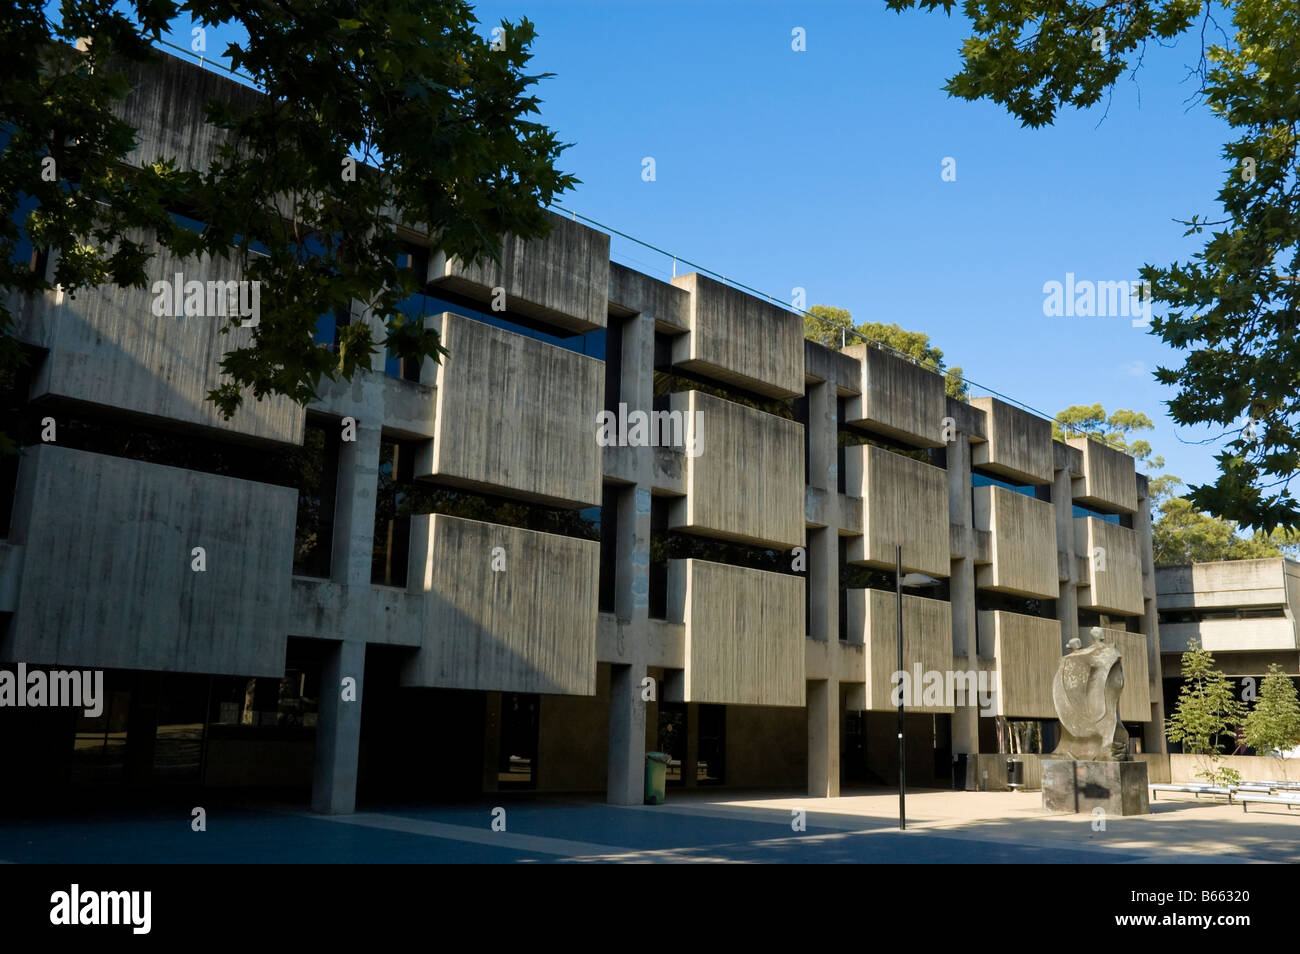 L'architecture brutaliste à Macquarie University, une université moderne dans le nord banlieue ouest de Sydney, Australie. Modernisme, brutalisme Banque D'Images